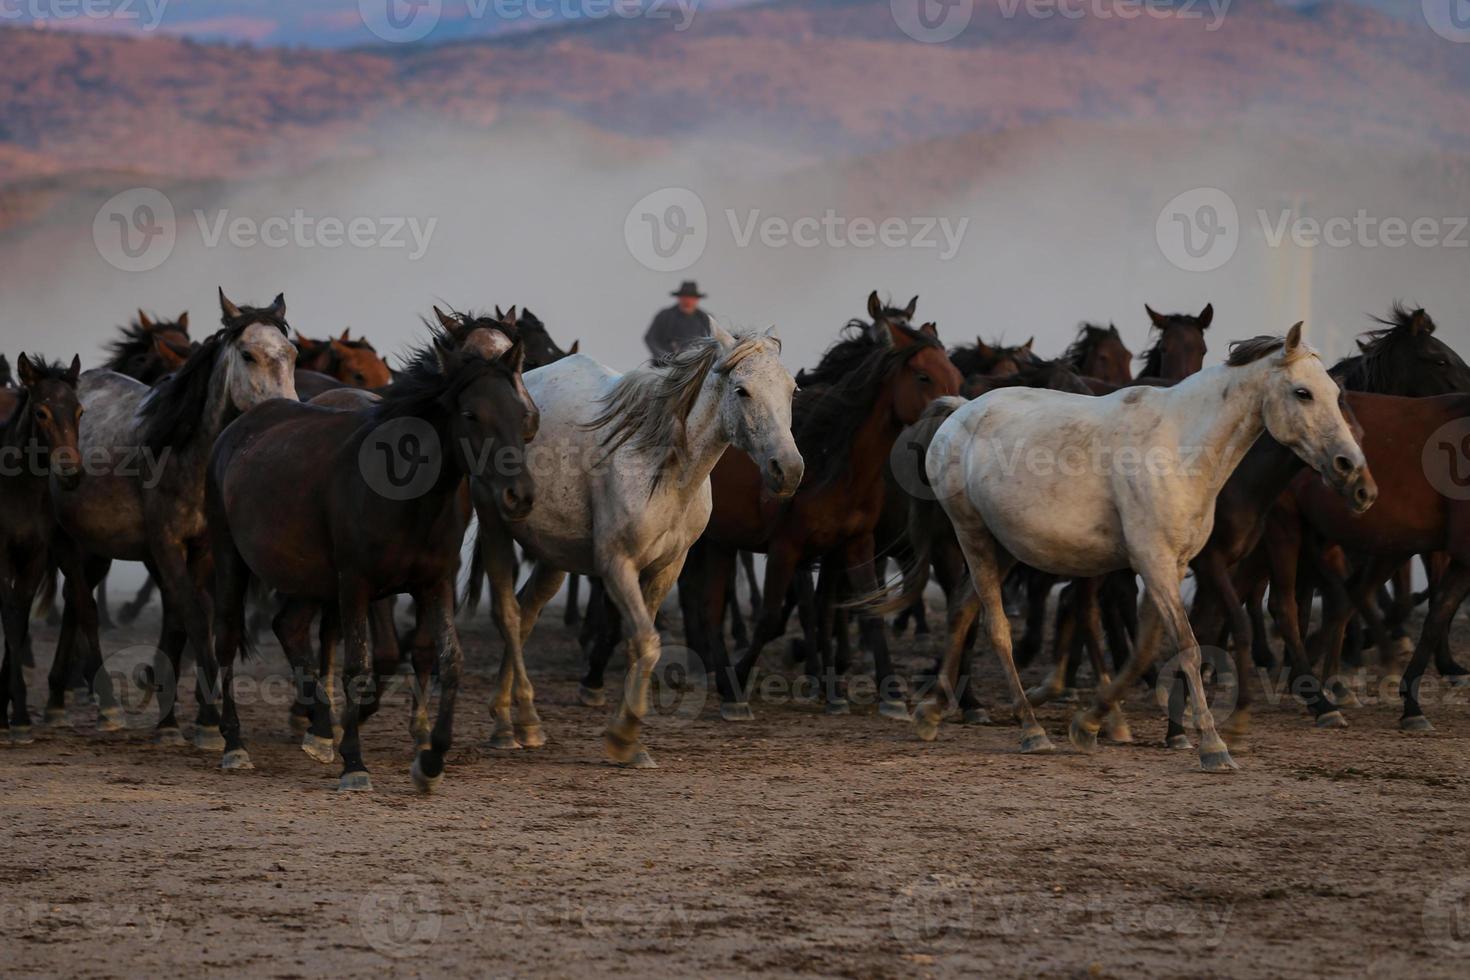 yilki hästar som springer i fält, kayseri, kalkon foto